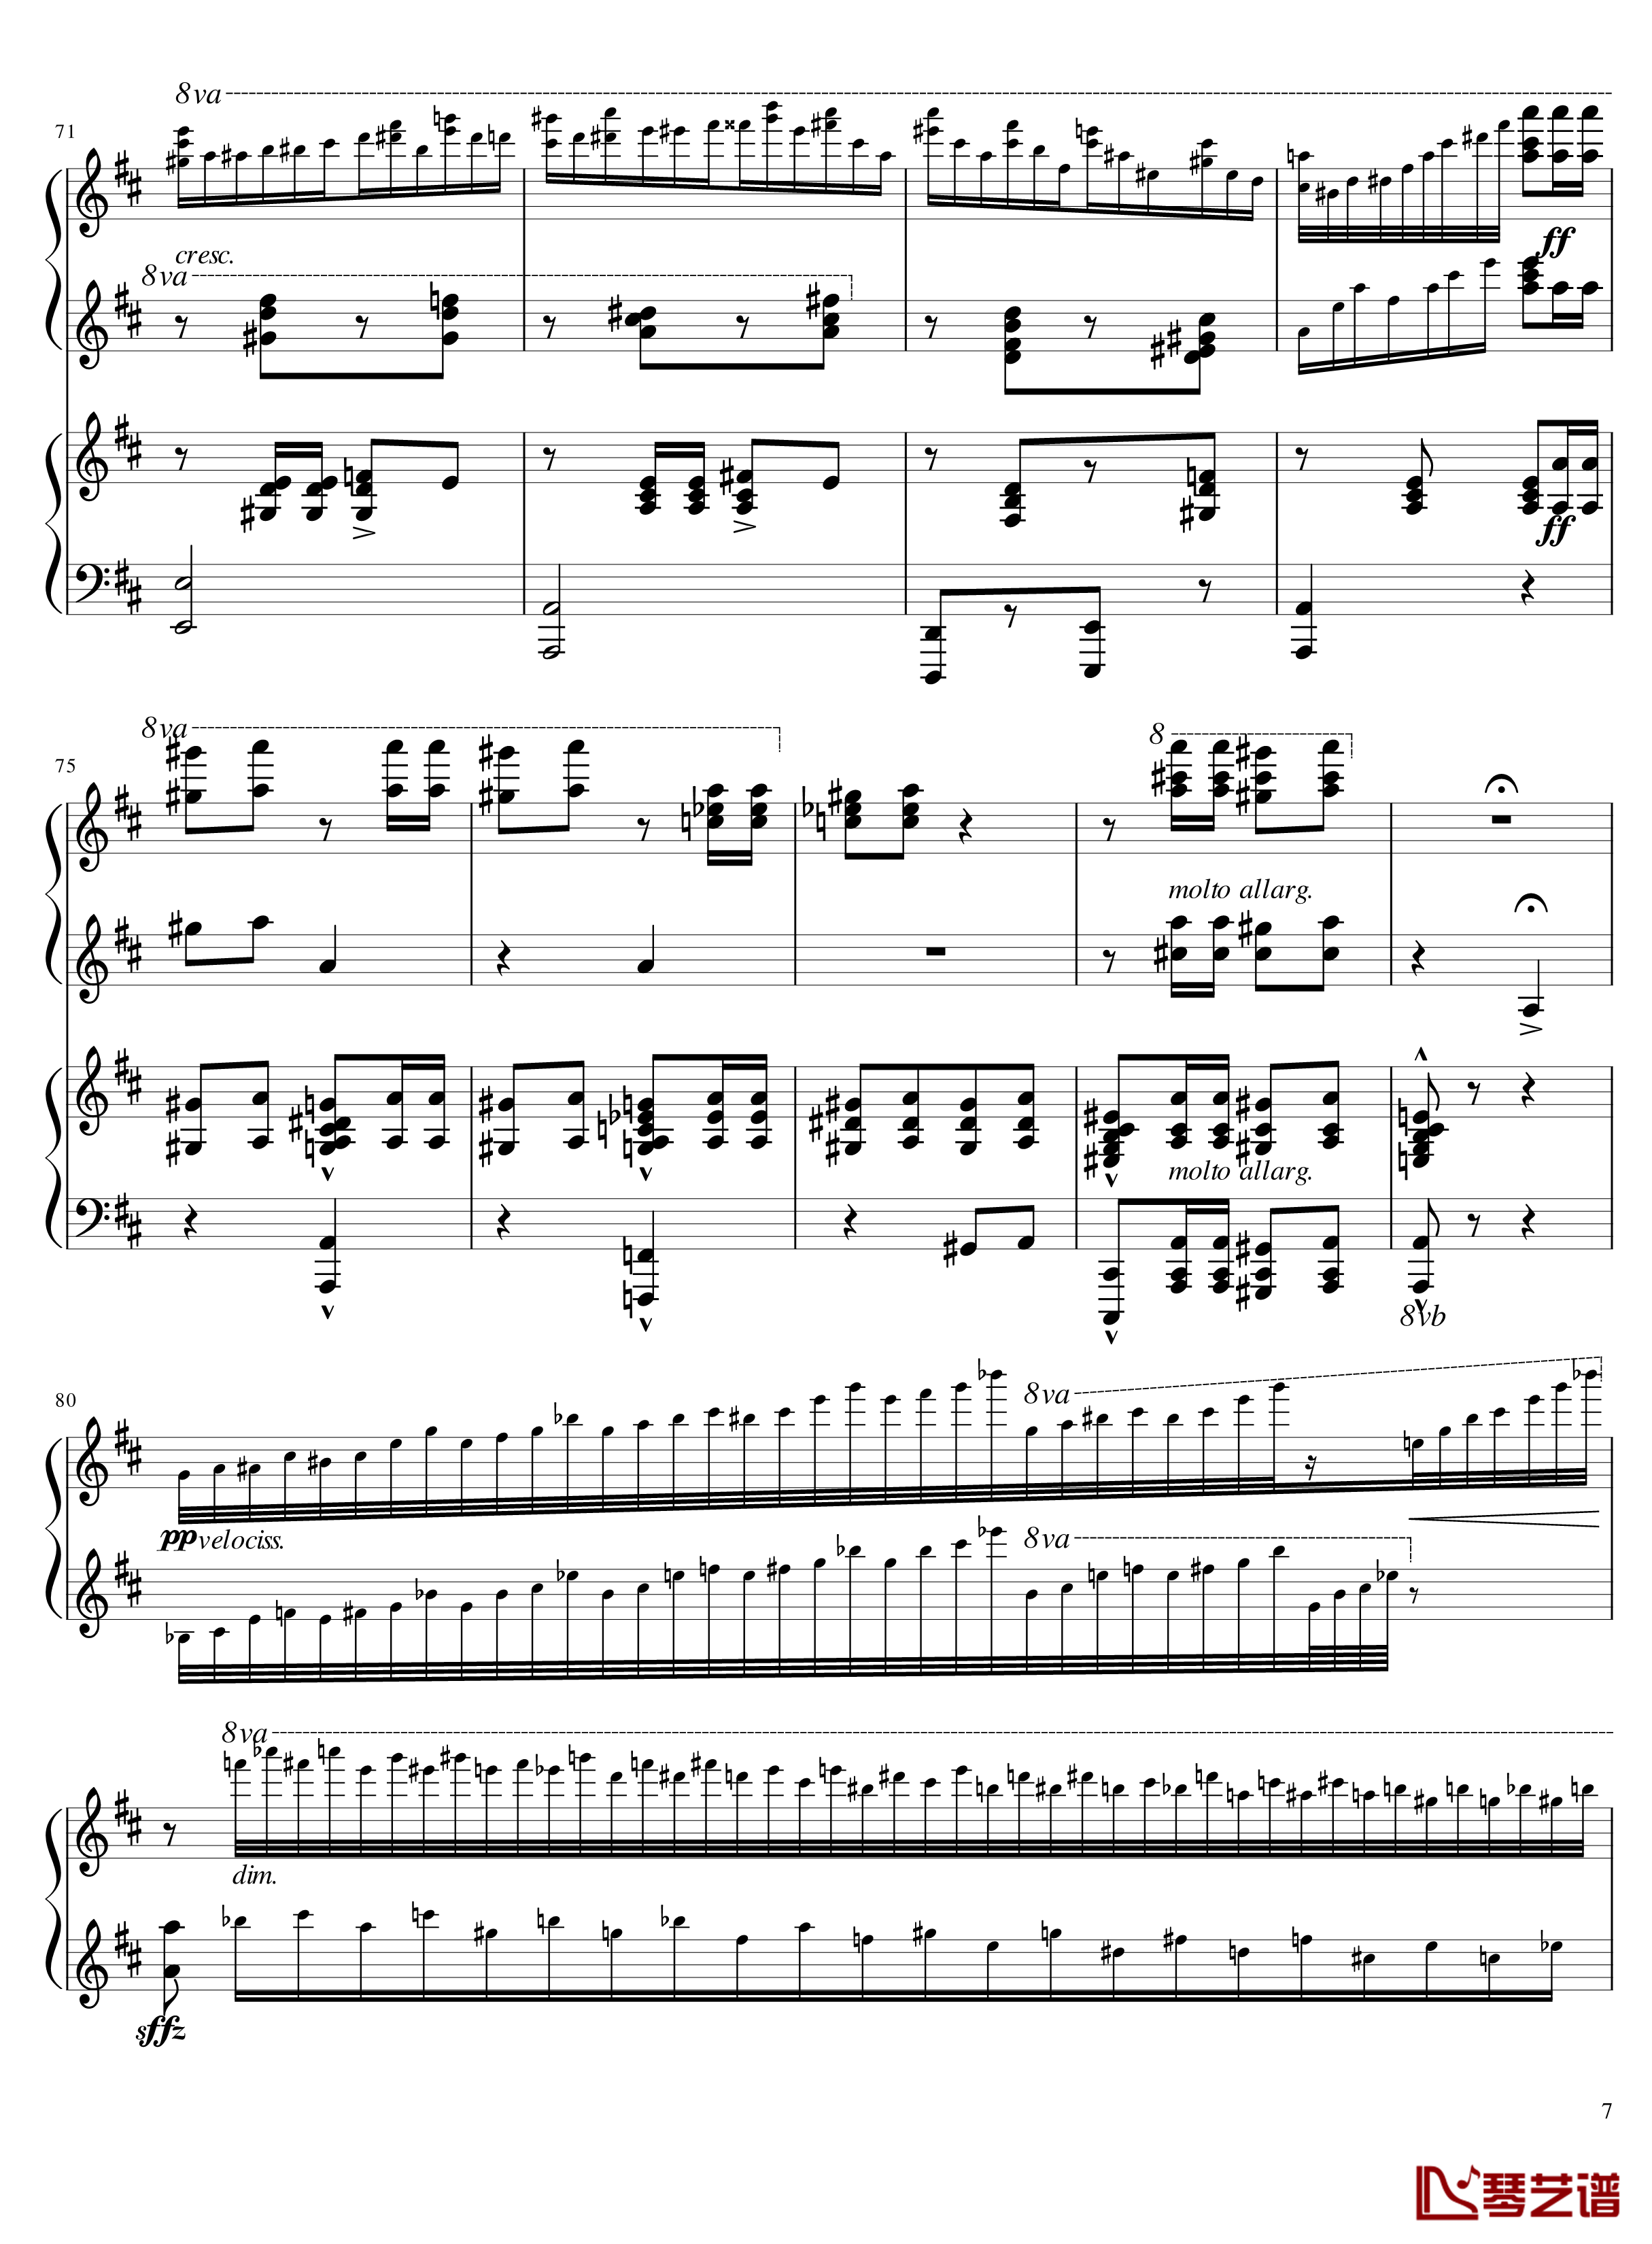 Italian Polka钢琴谱-意大利波尔卡-拉赫马尼若夫7